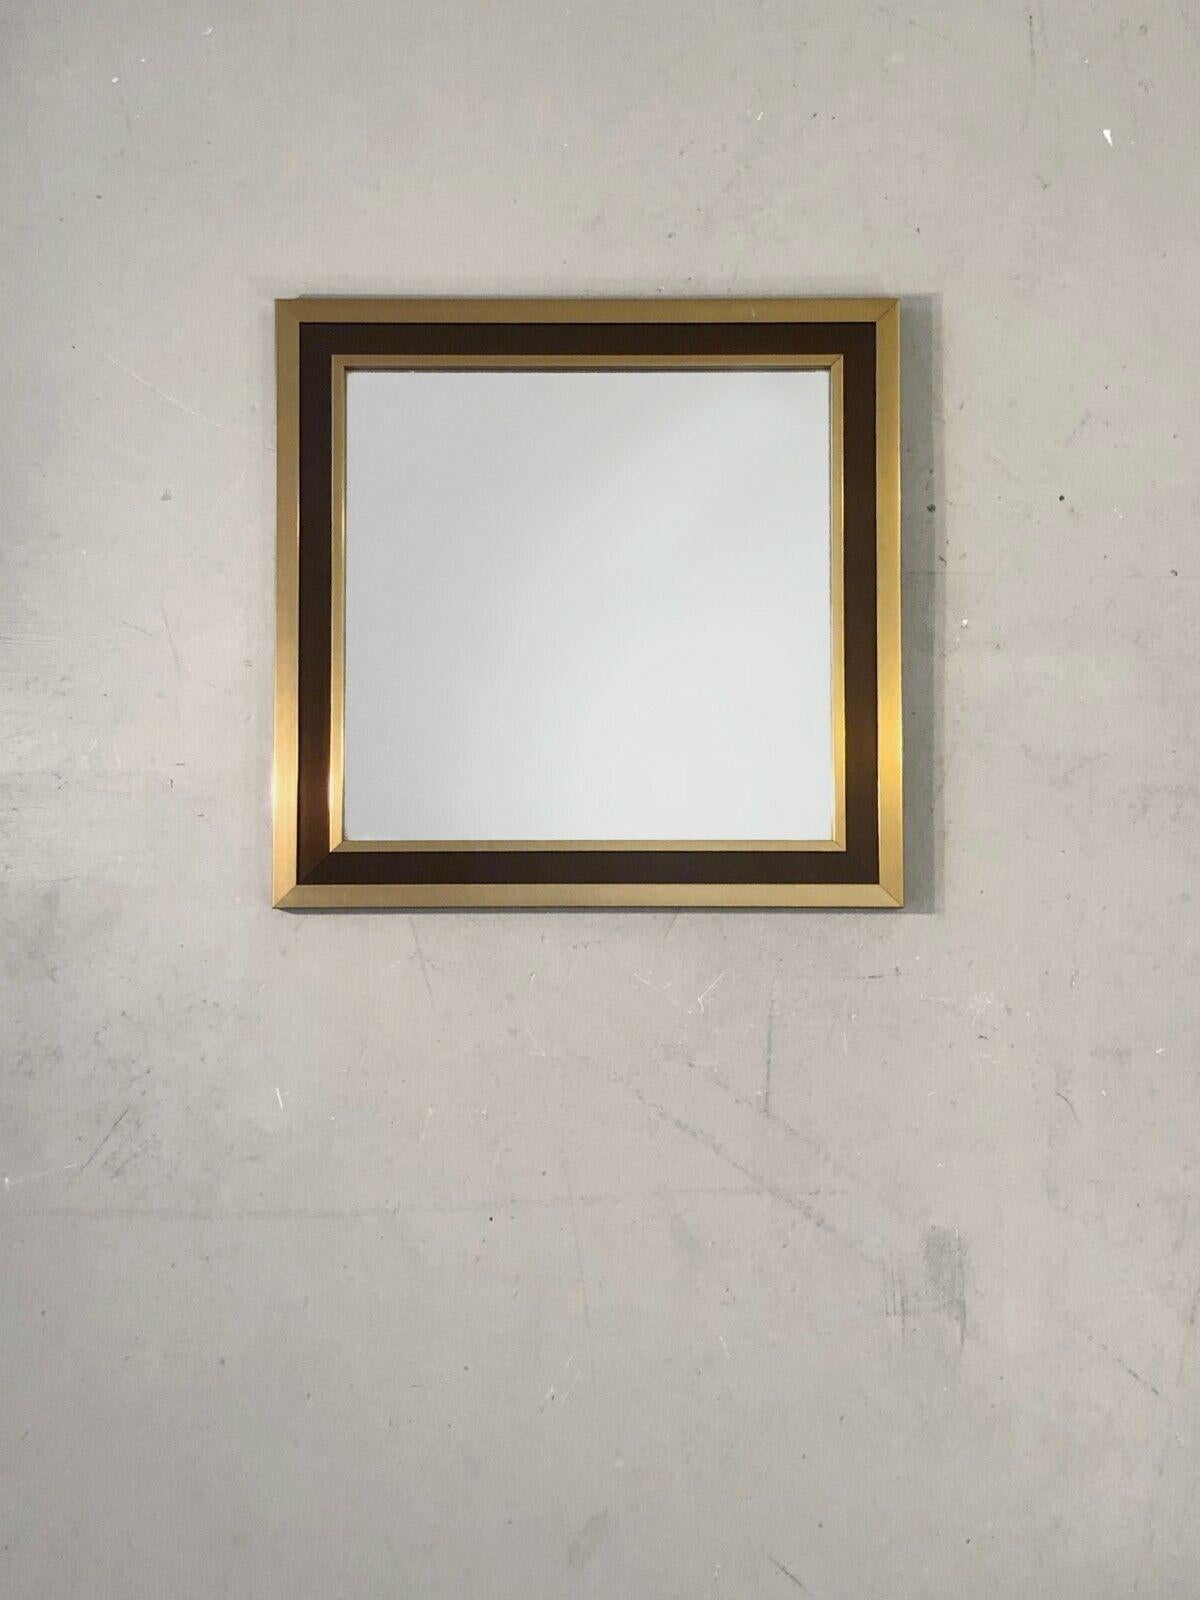 Eleganter kleiner quadratischer Wandspiegel von hervorragender Qualität, postmodernistisch, Memphis, Shabby-Chic, mit quadratischem Rahmen aus goldfarbenem und braunem Metall, lackiert, zuzuordnen, Frankreich 1970.

ABMESSUNGEN: 36,5 x 36,5 x 2